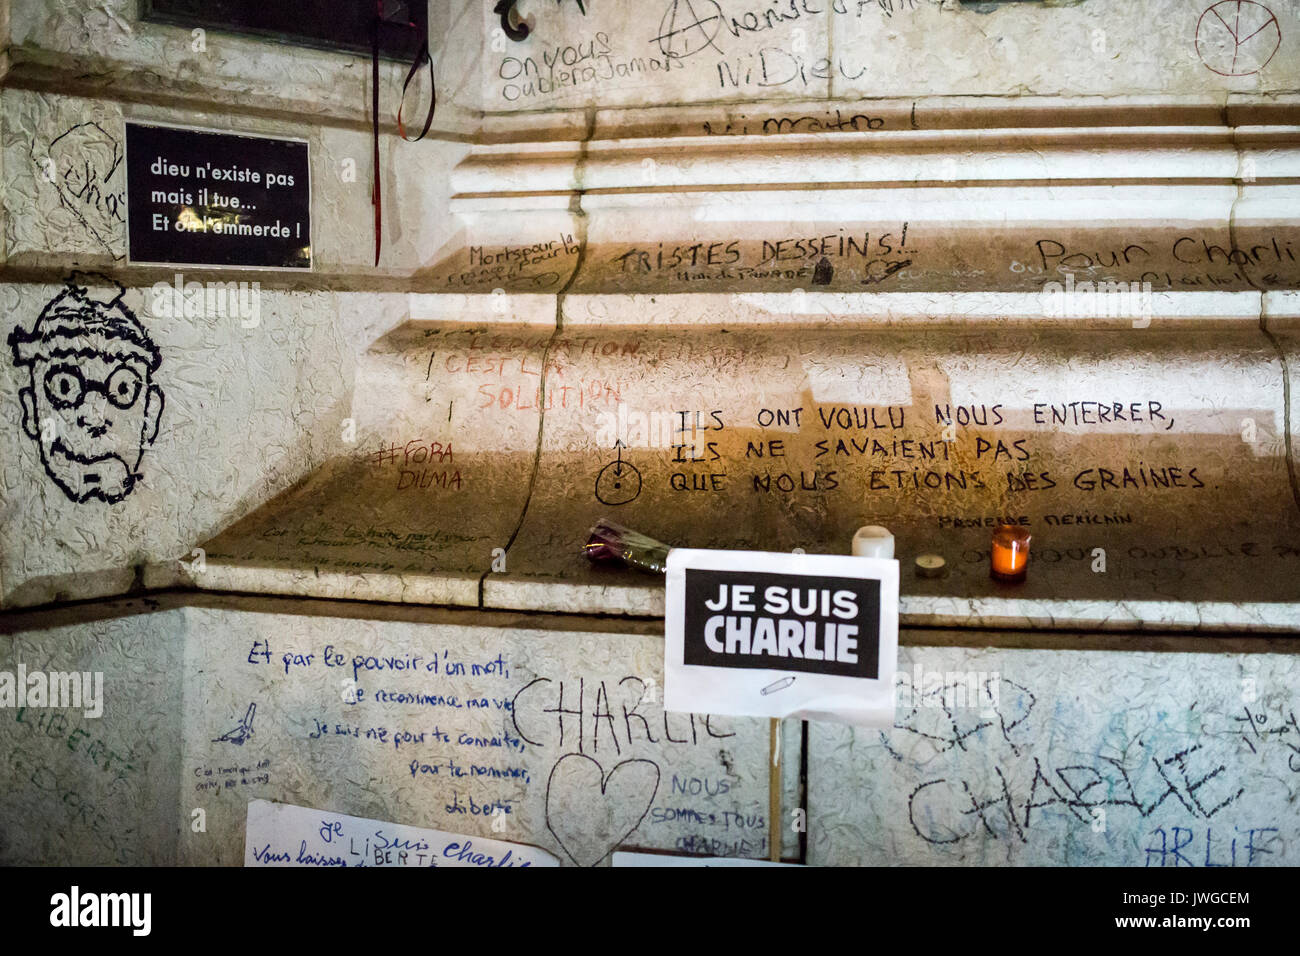 Viele Slogans, Leiter von Wally, Zeichen. Hommage an die Opfer von Charlie Hebdo Tötung in Paris der 7. Januar 2015. Stockfoto